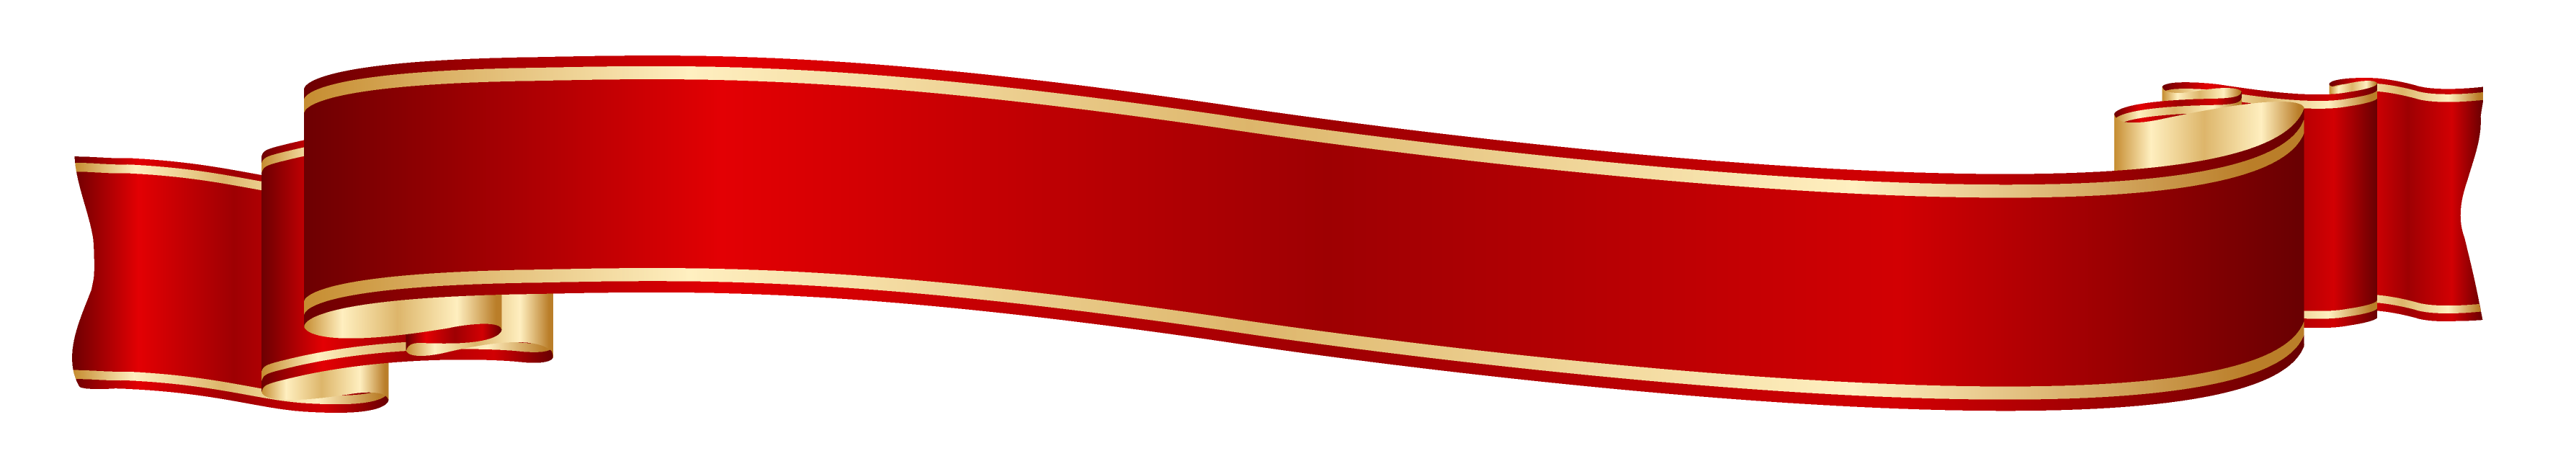 Красная лента PNG картина